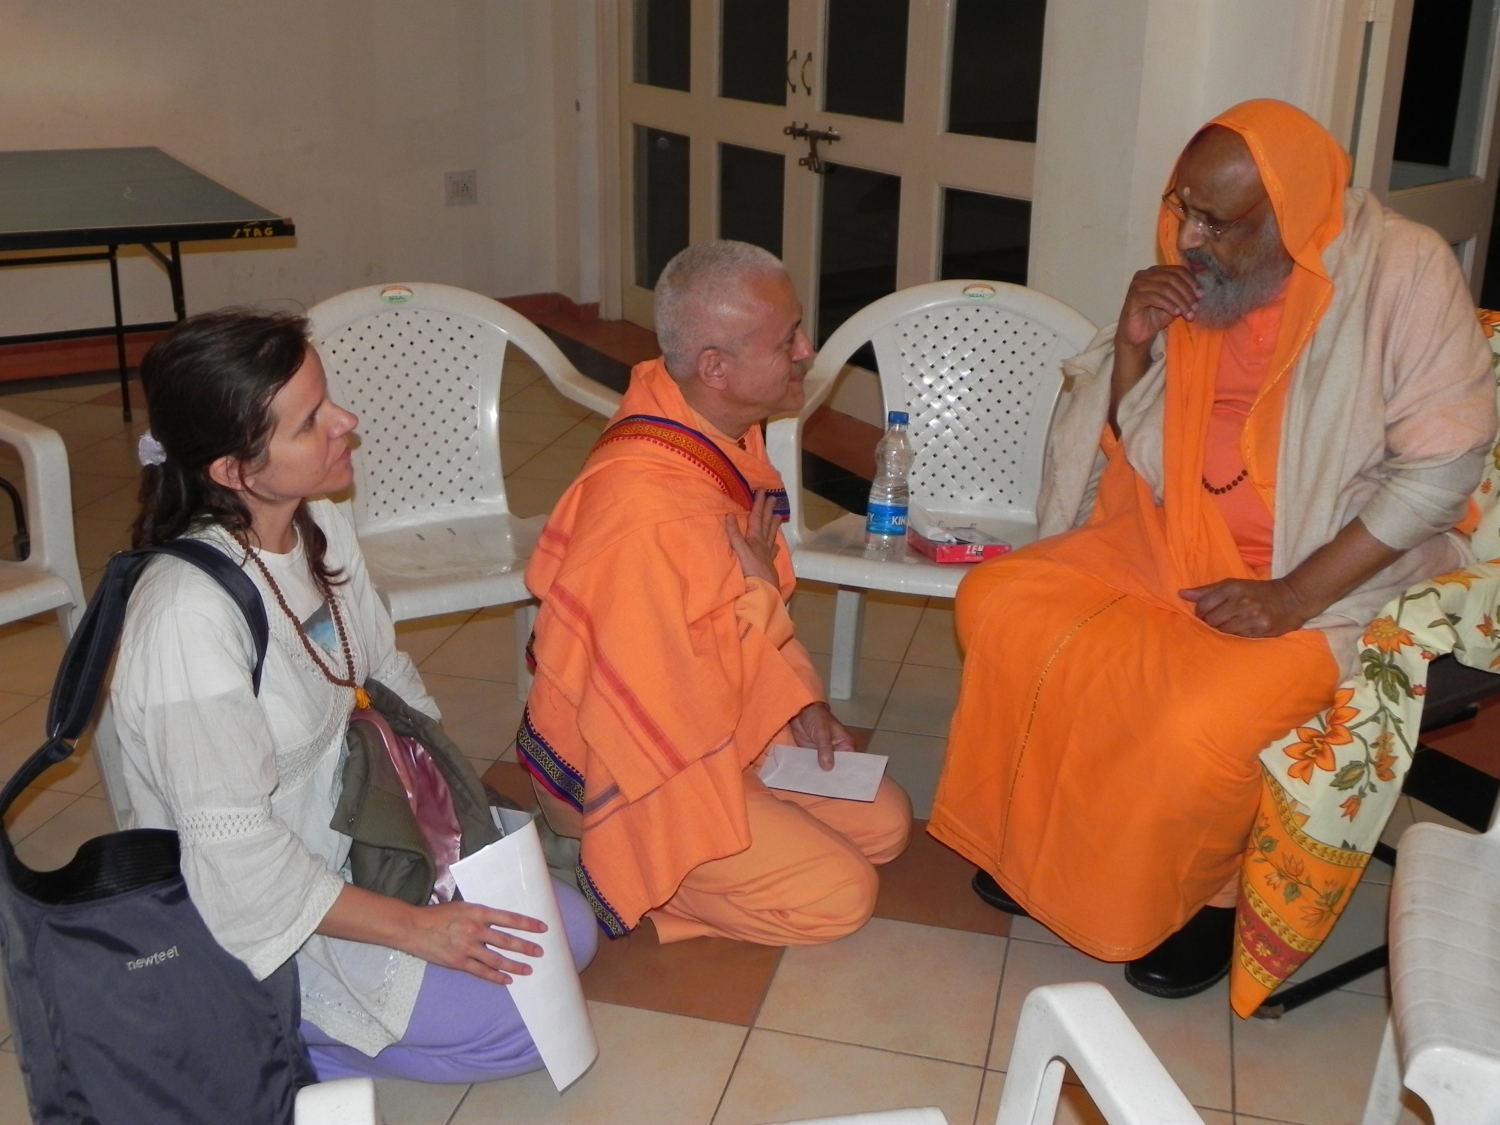 Encontro de H.H. Jagat Guru Amrta Súryánanda Mahá Rája com H.H. Pujiya Svámin Dayánanda Sarasvatí - Ahmedabad, Índia – 2011